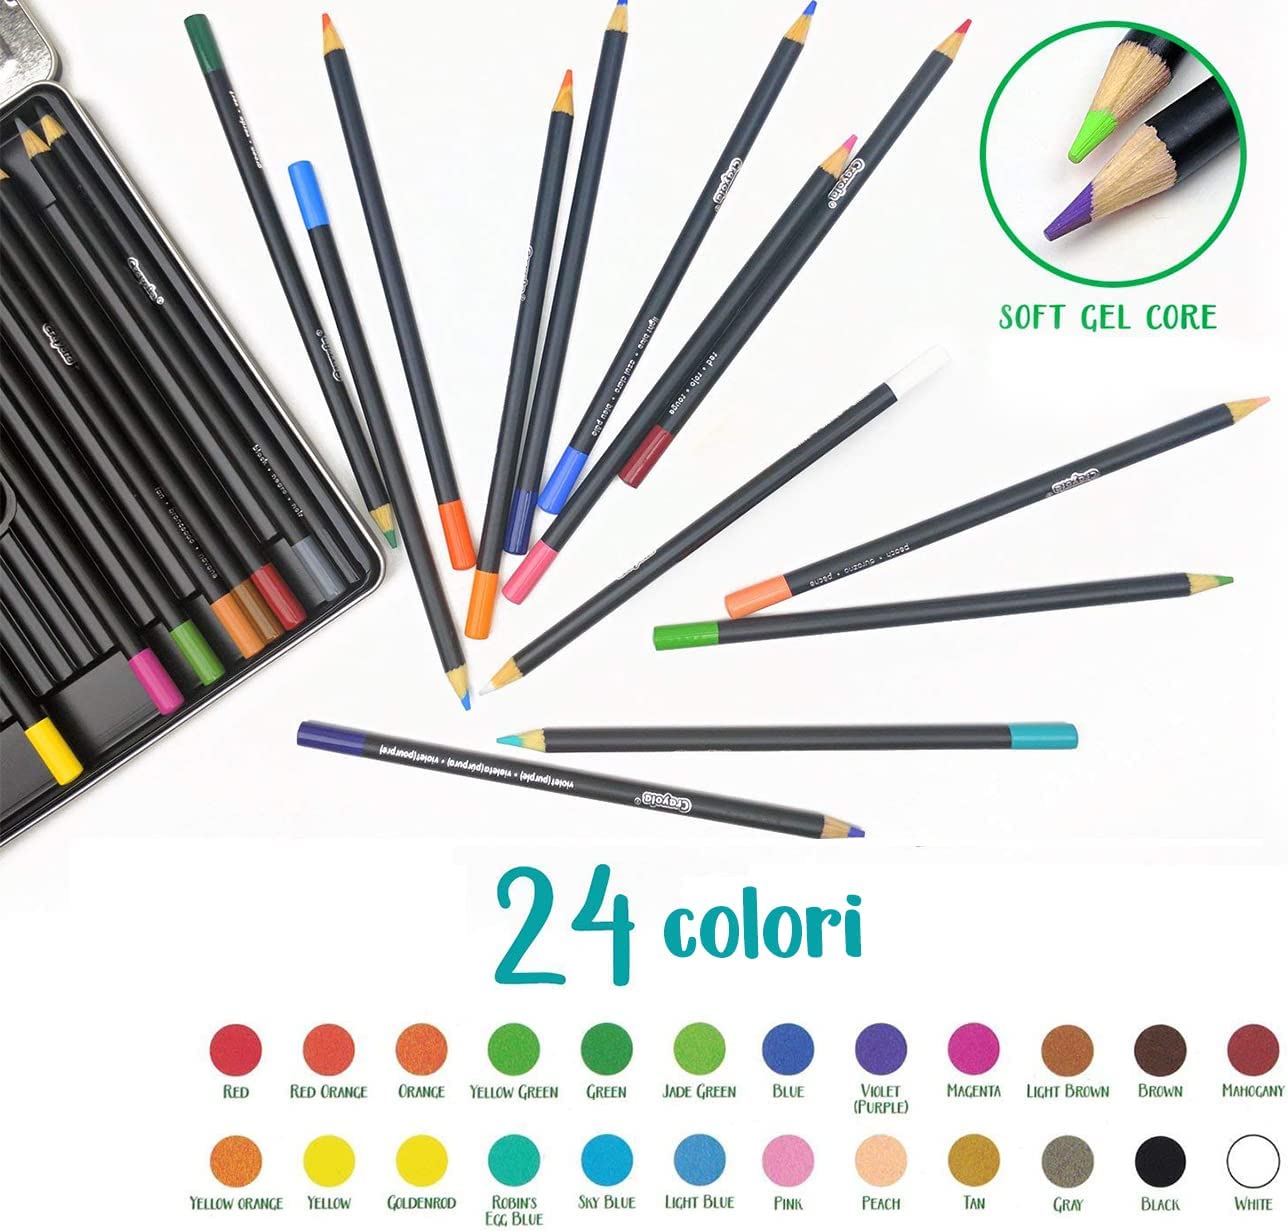 24 Matite colorate Crayola Signature